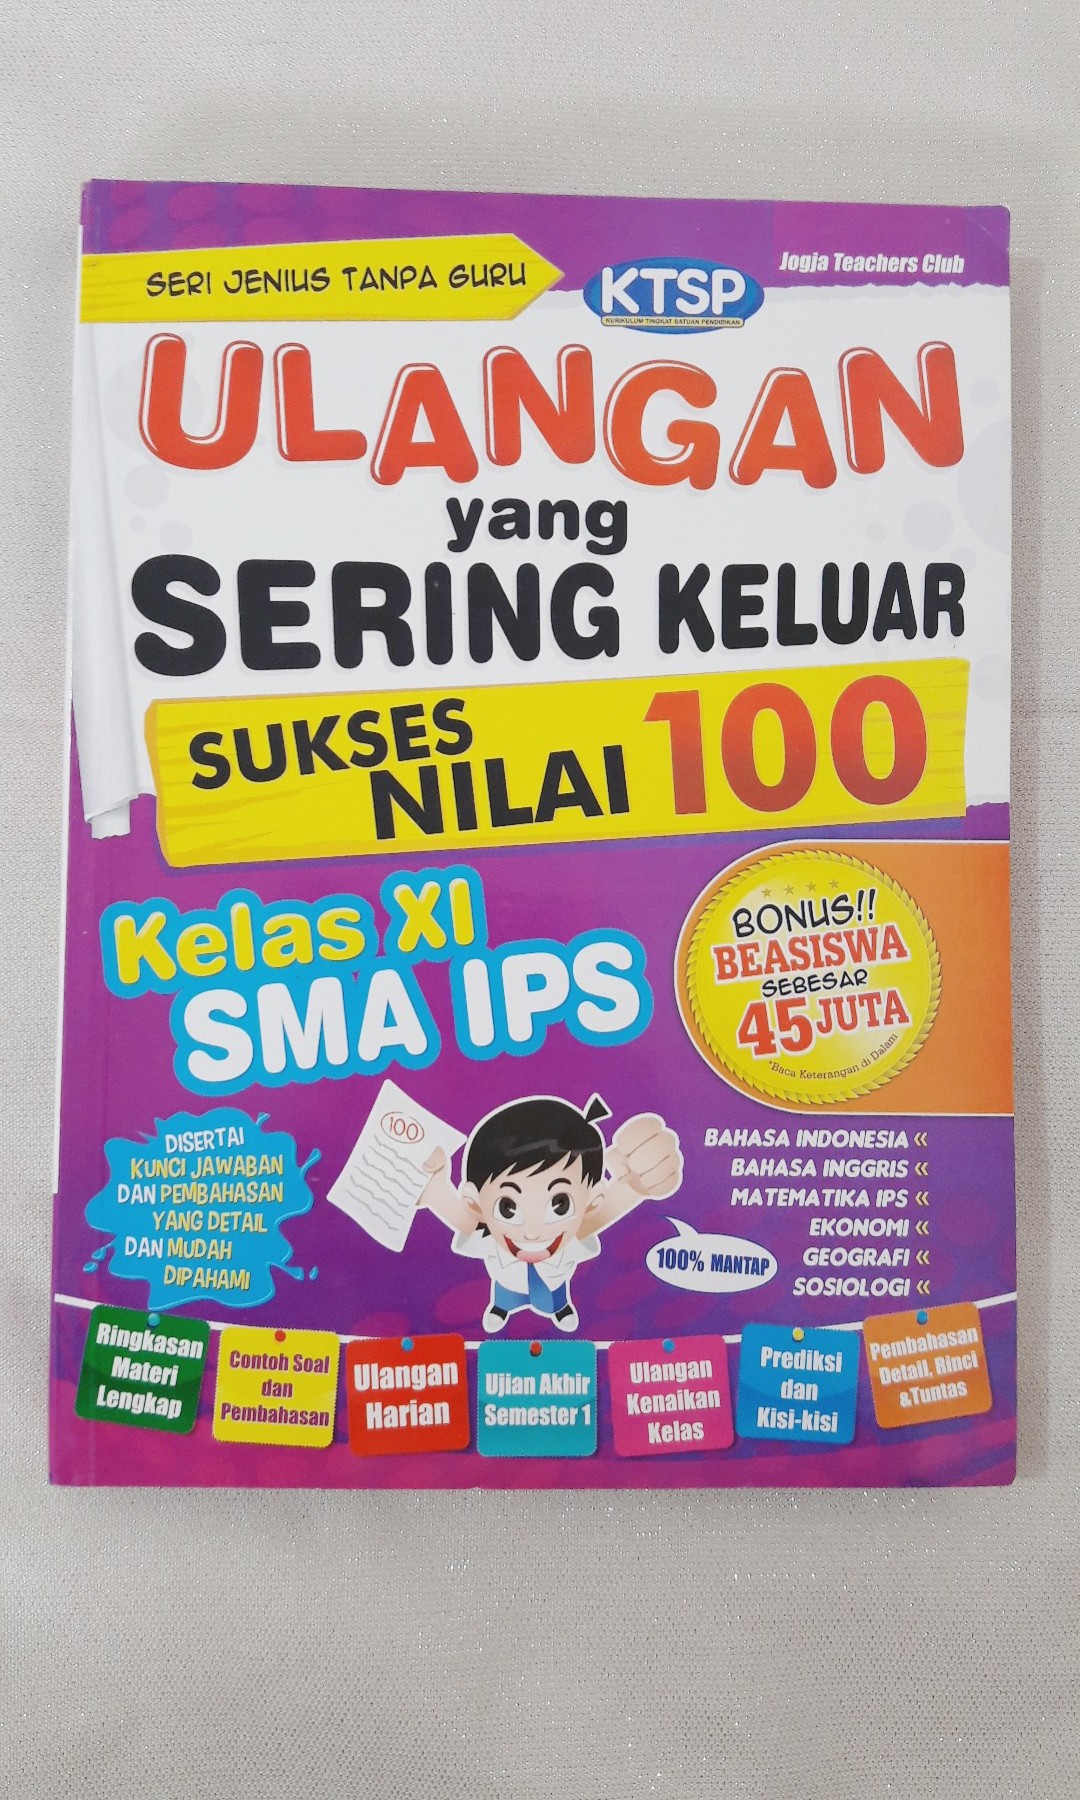 Buku Kumpulan Soal IPS SMA Books & Stationery Books on Carousell